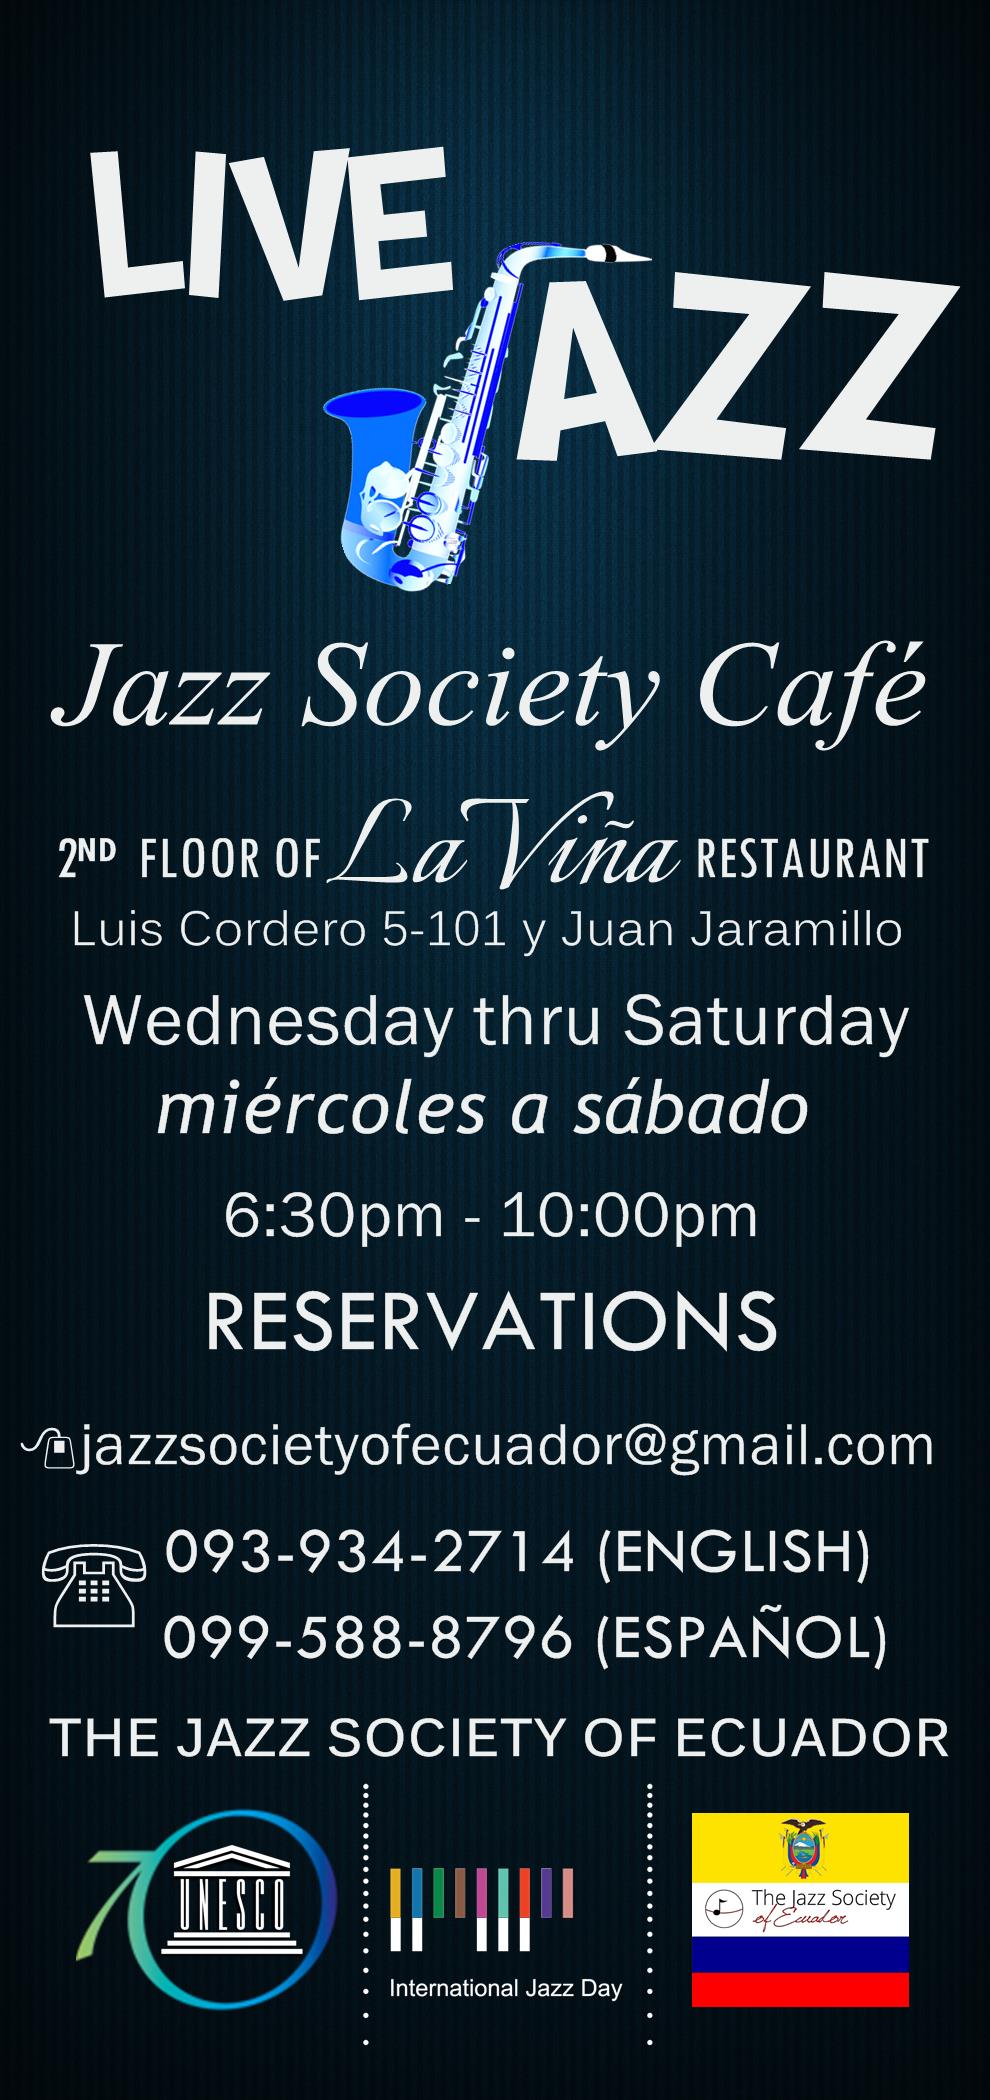 Contact - Jazz Society Café